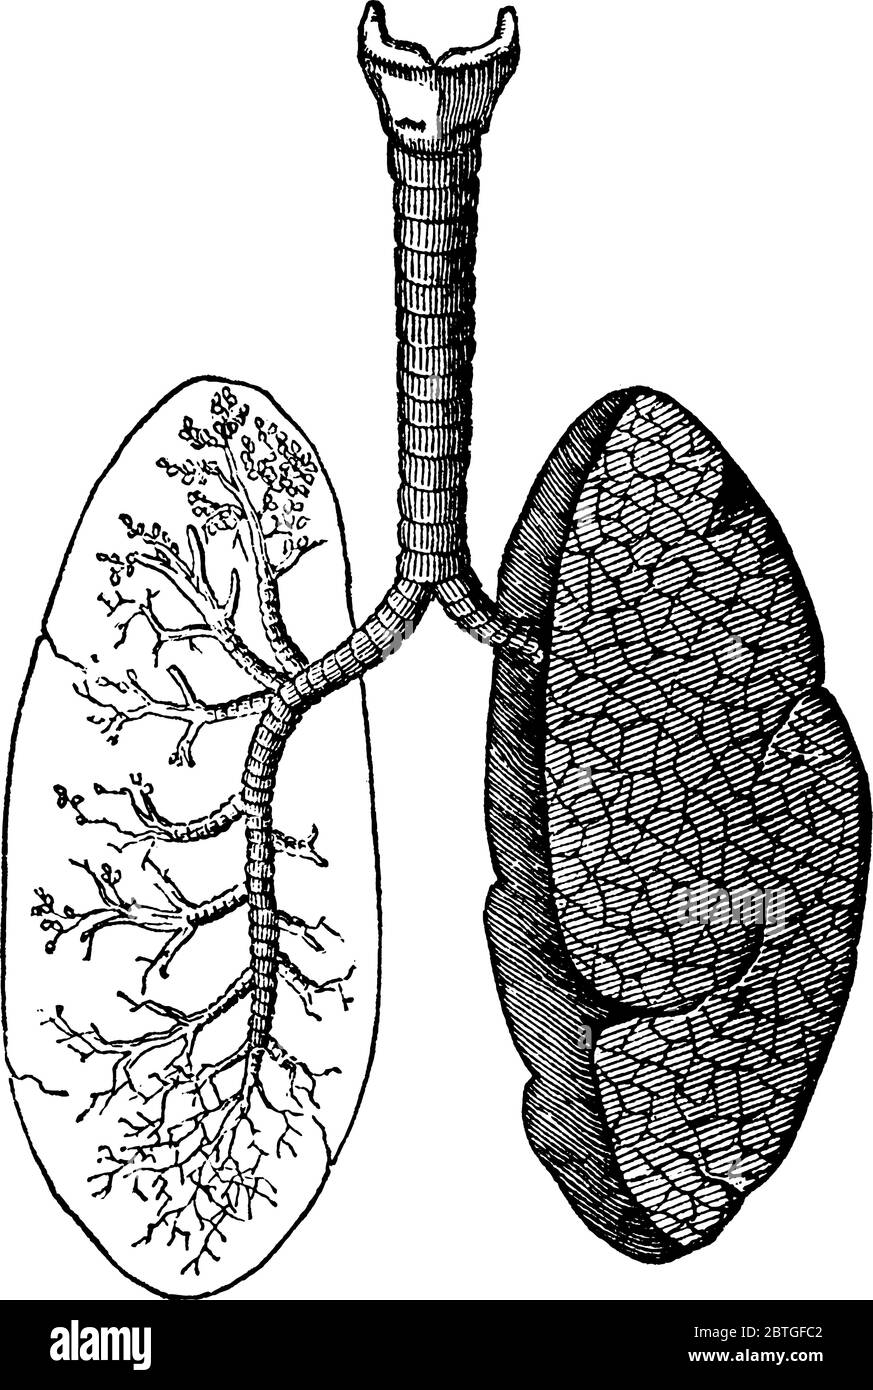 Una rappresentazione tipica dei polmoni e dei passaggi dell'aria, degli organi primari del sistema respiratorio negli esseri umani e negli animali, disegno di linee d'epoca Illustrazione Vettoriale